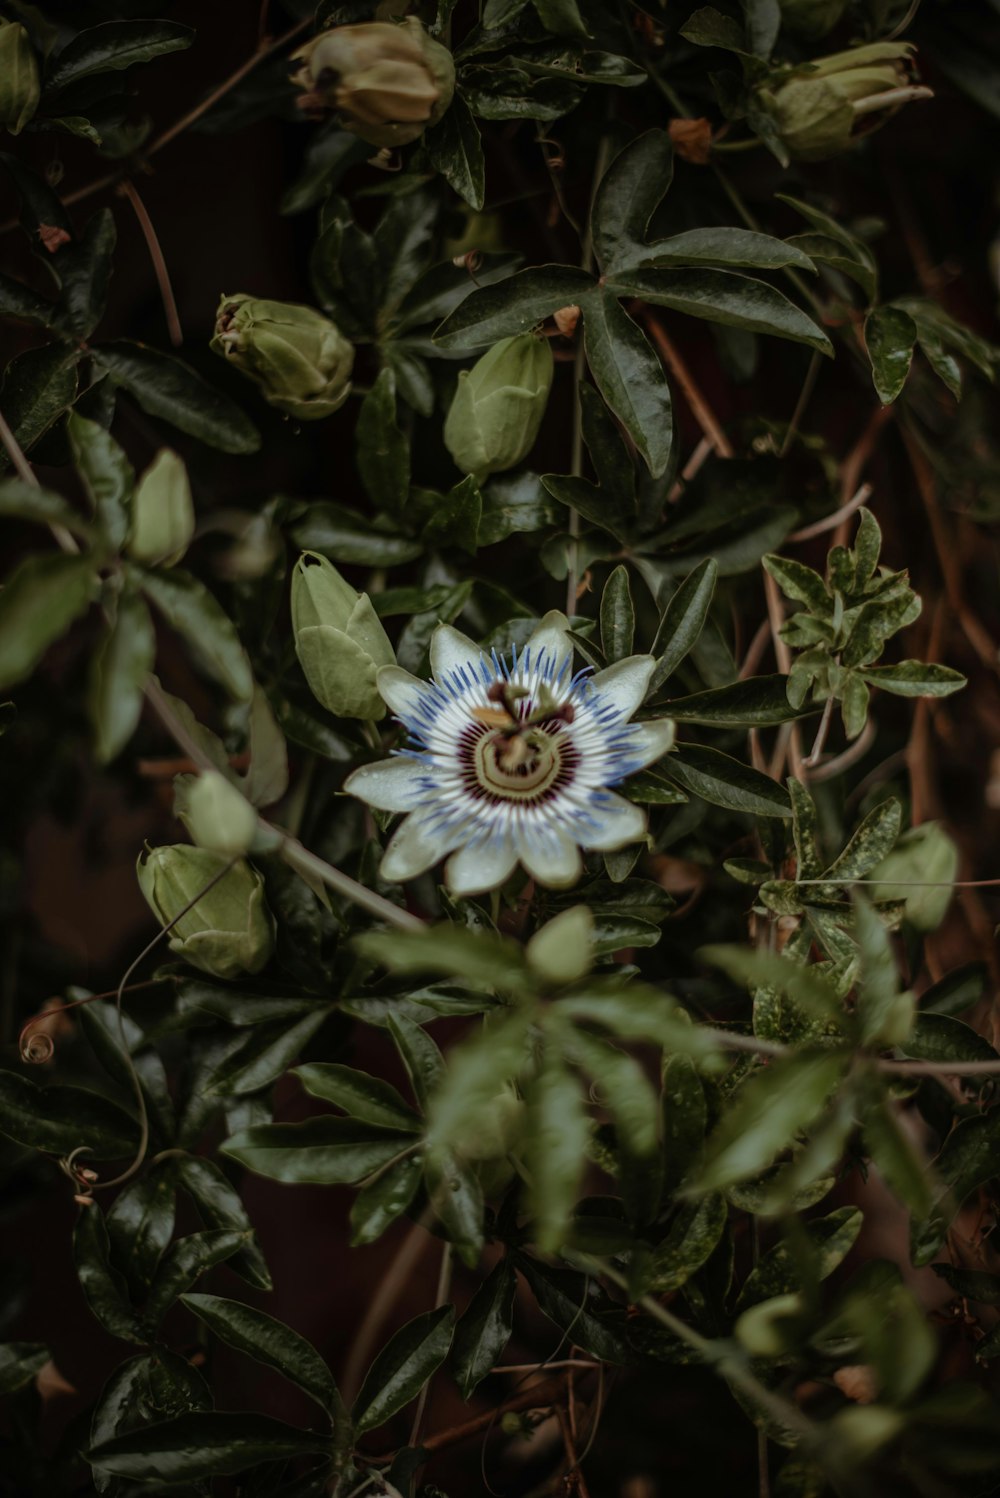 fleur bleue avec des feuilles vertes